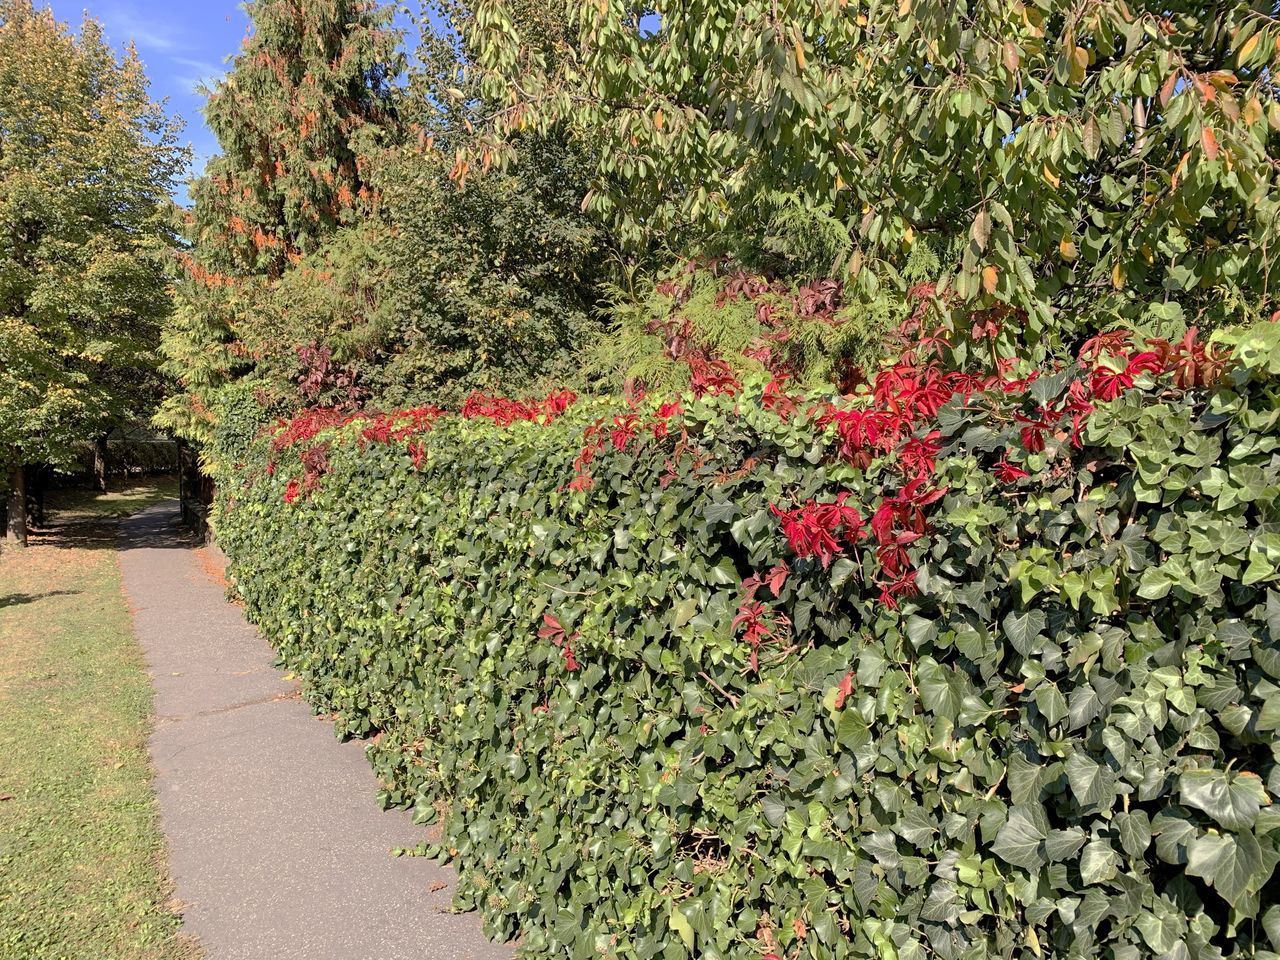 RED FLOWERING PLANTS IN PARK